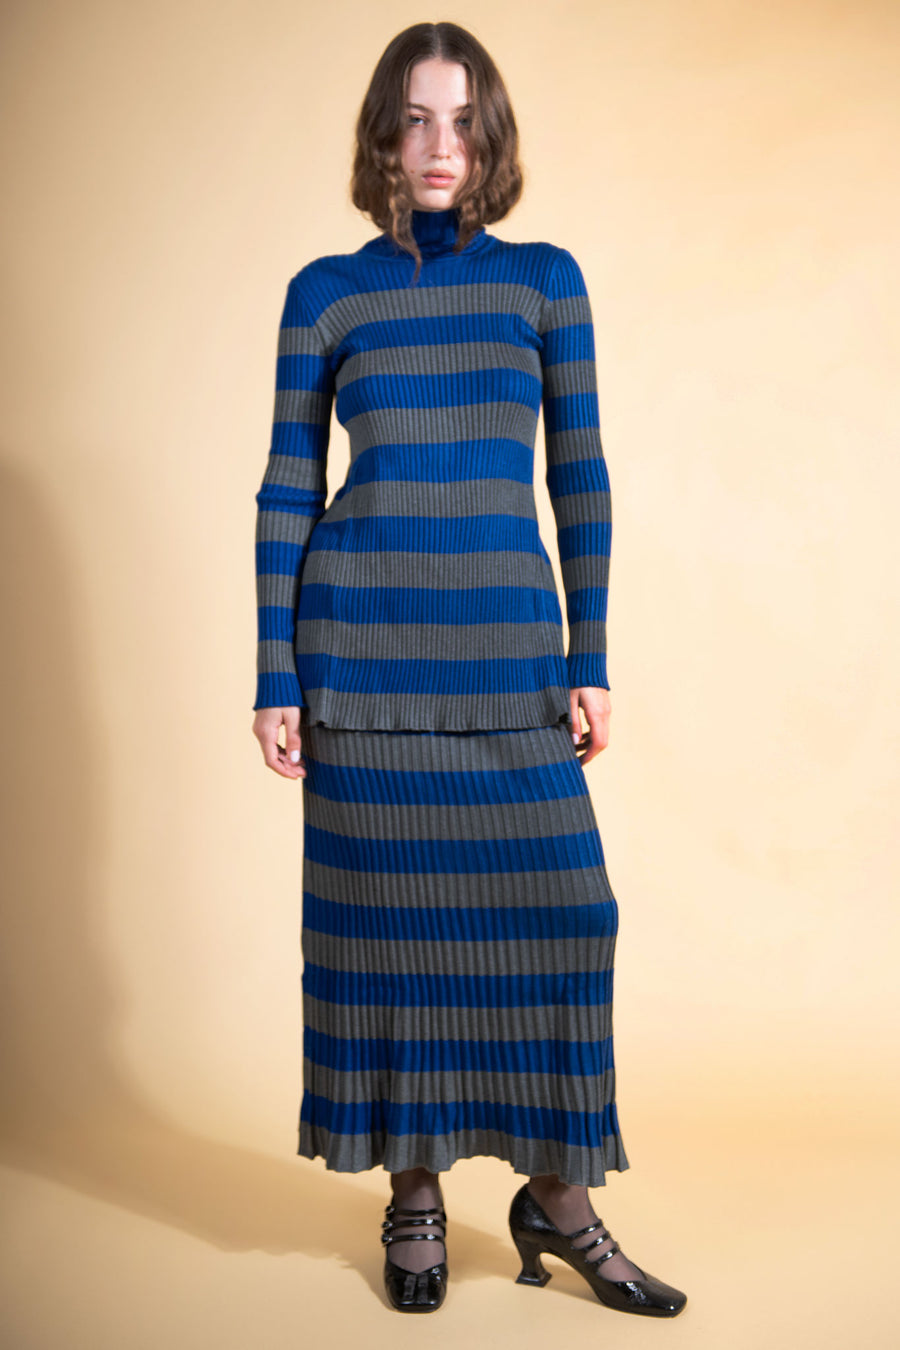 BATSHEVA - Mia Knit Skirt in Blue & Grey Stripe